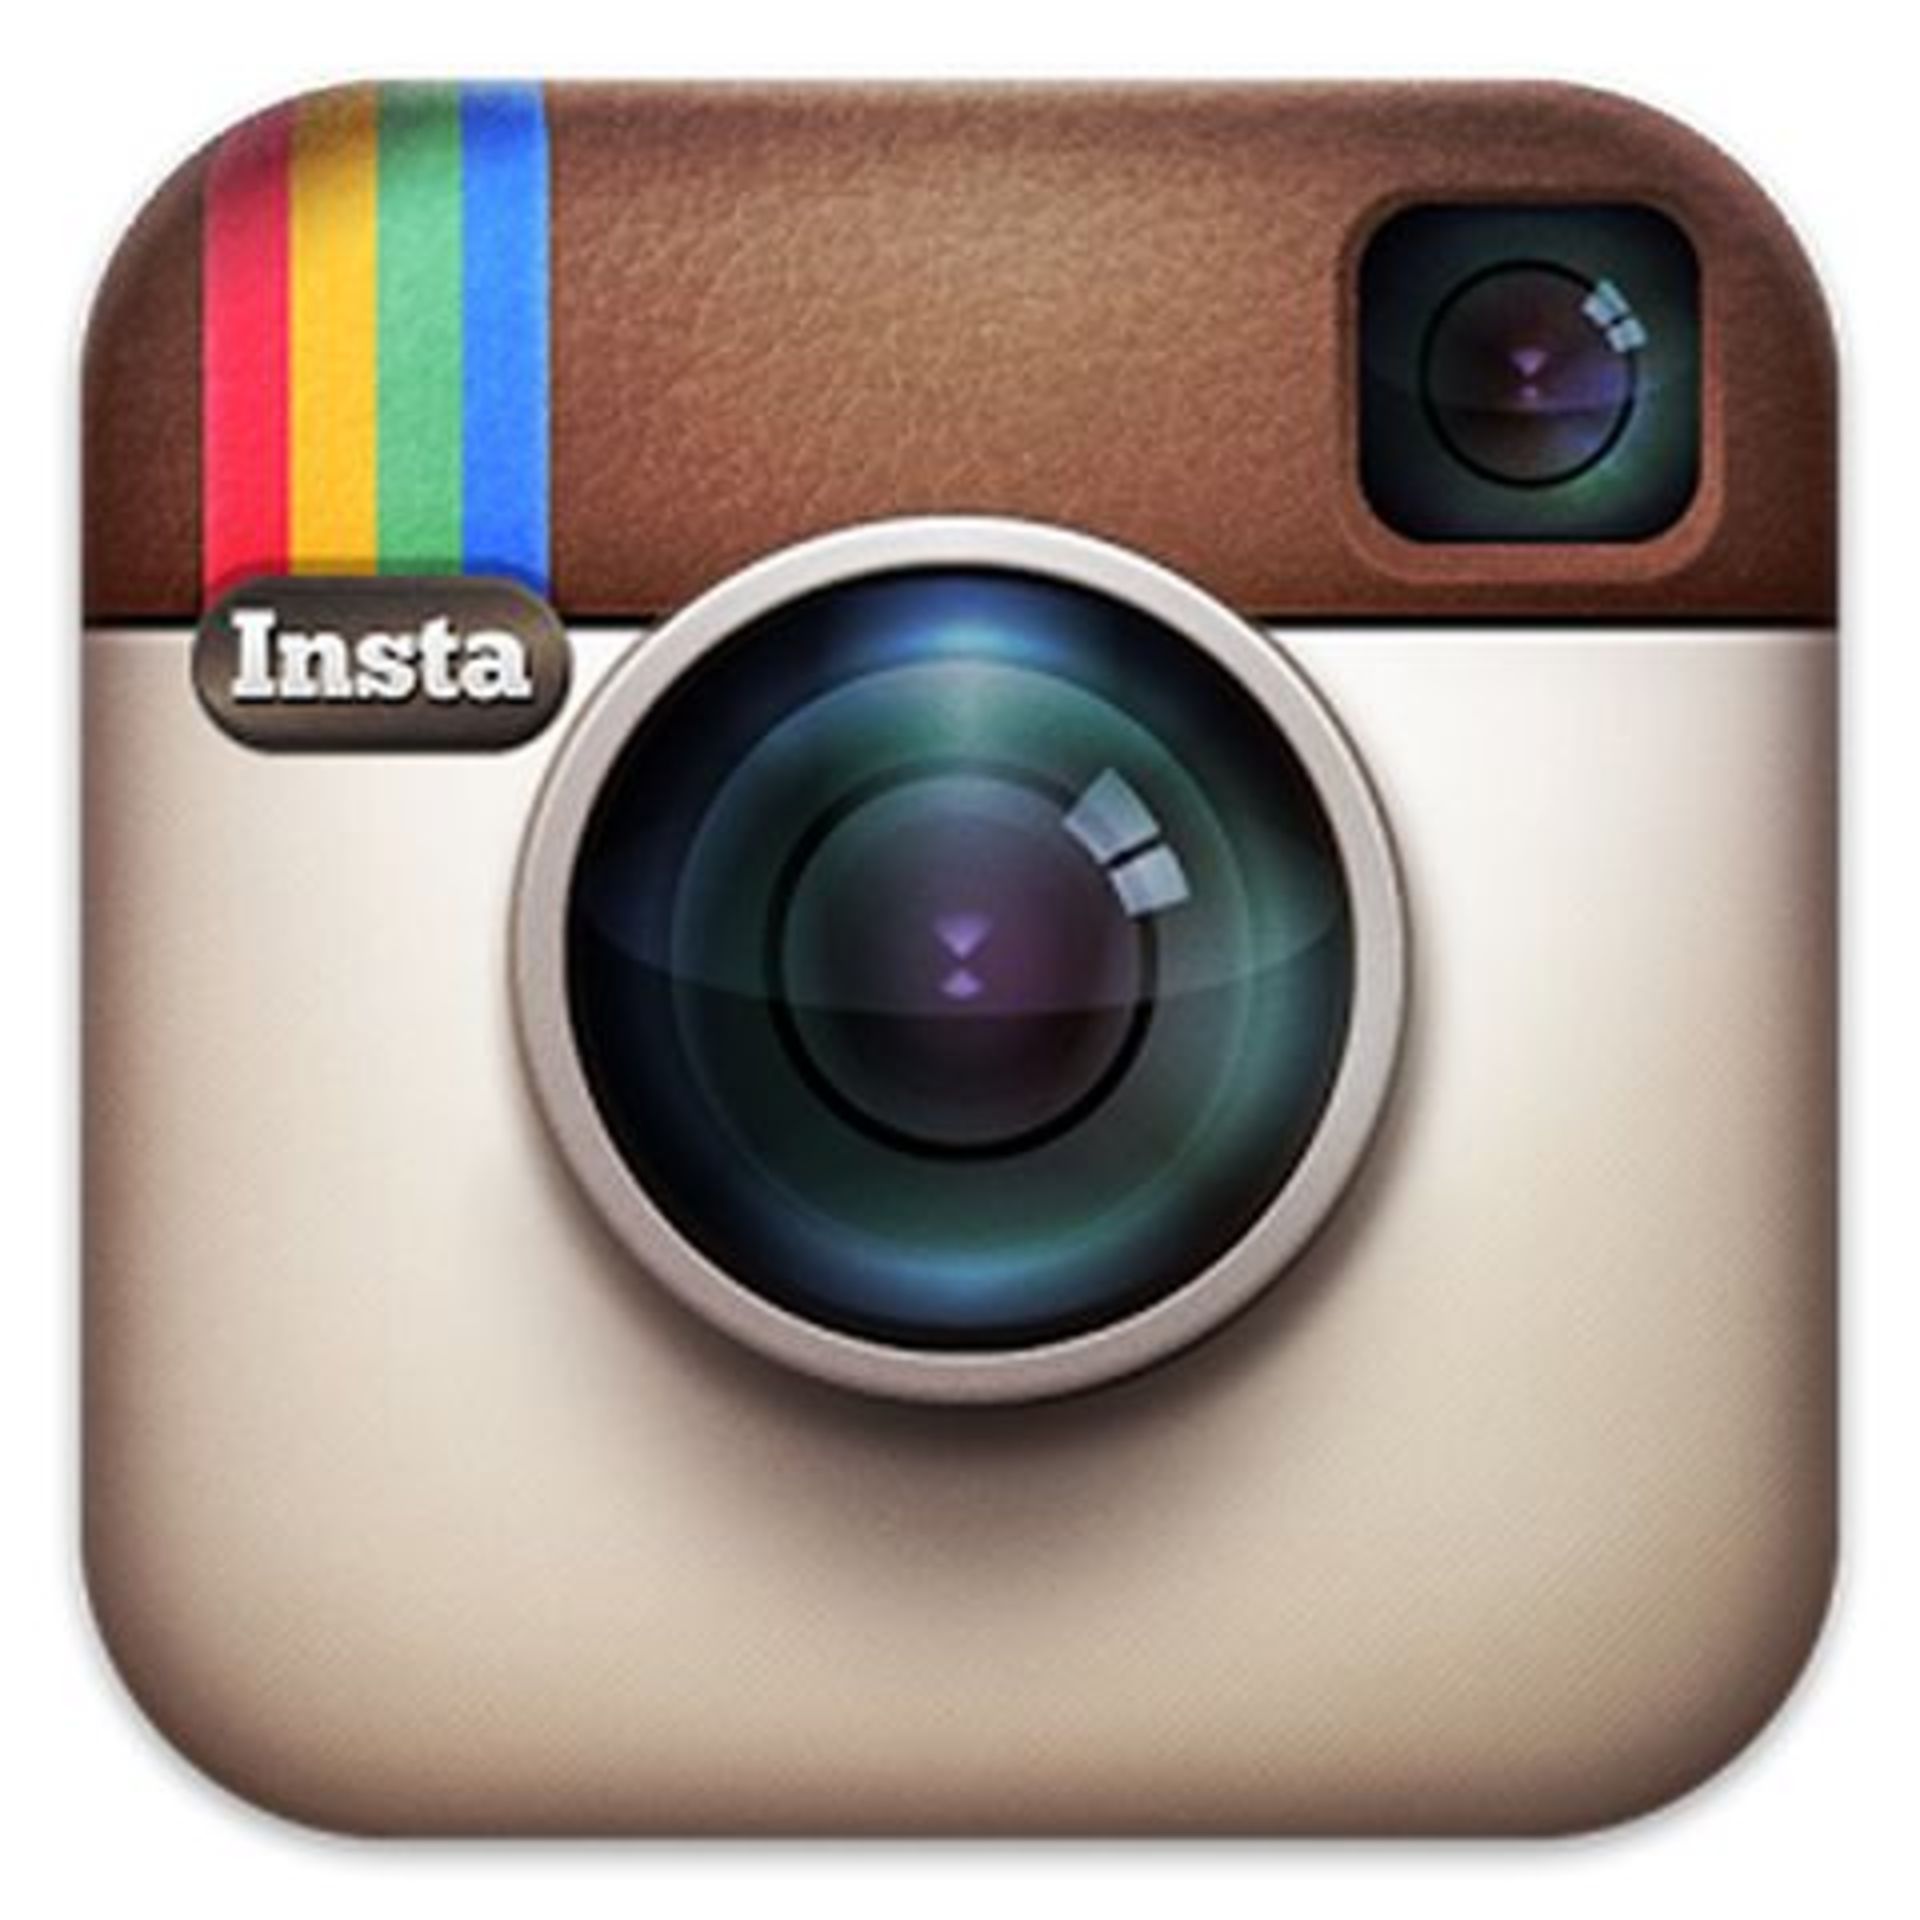 Social Media Links Follow Us On Facebook Follow us on Linkedin Follow us on Instagram, - Image 3 of 3